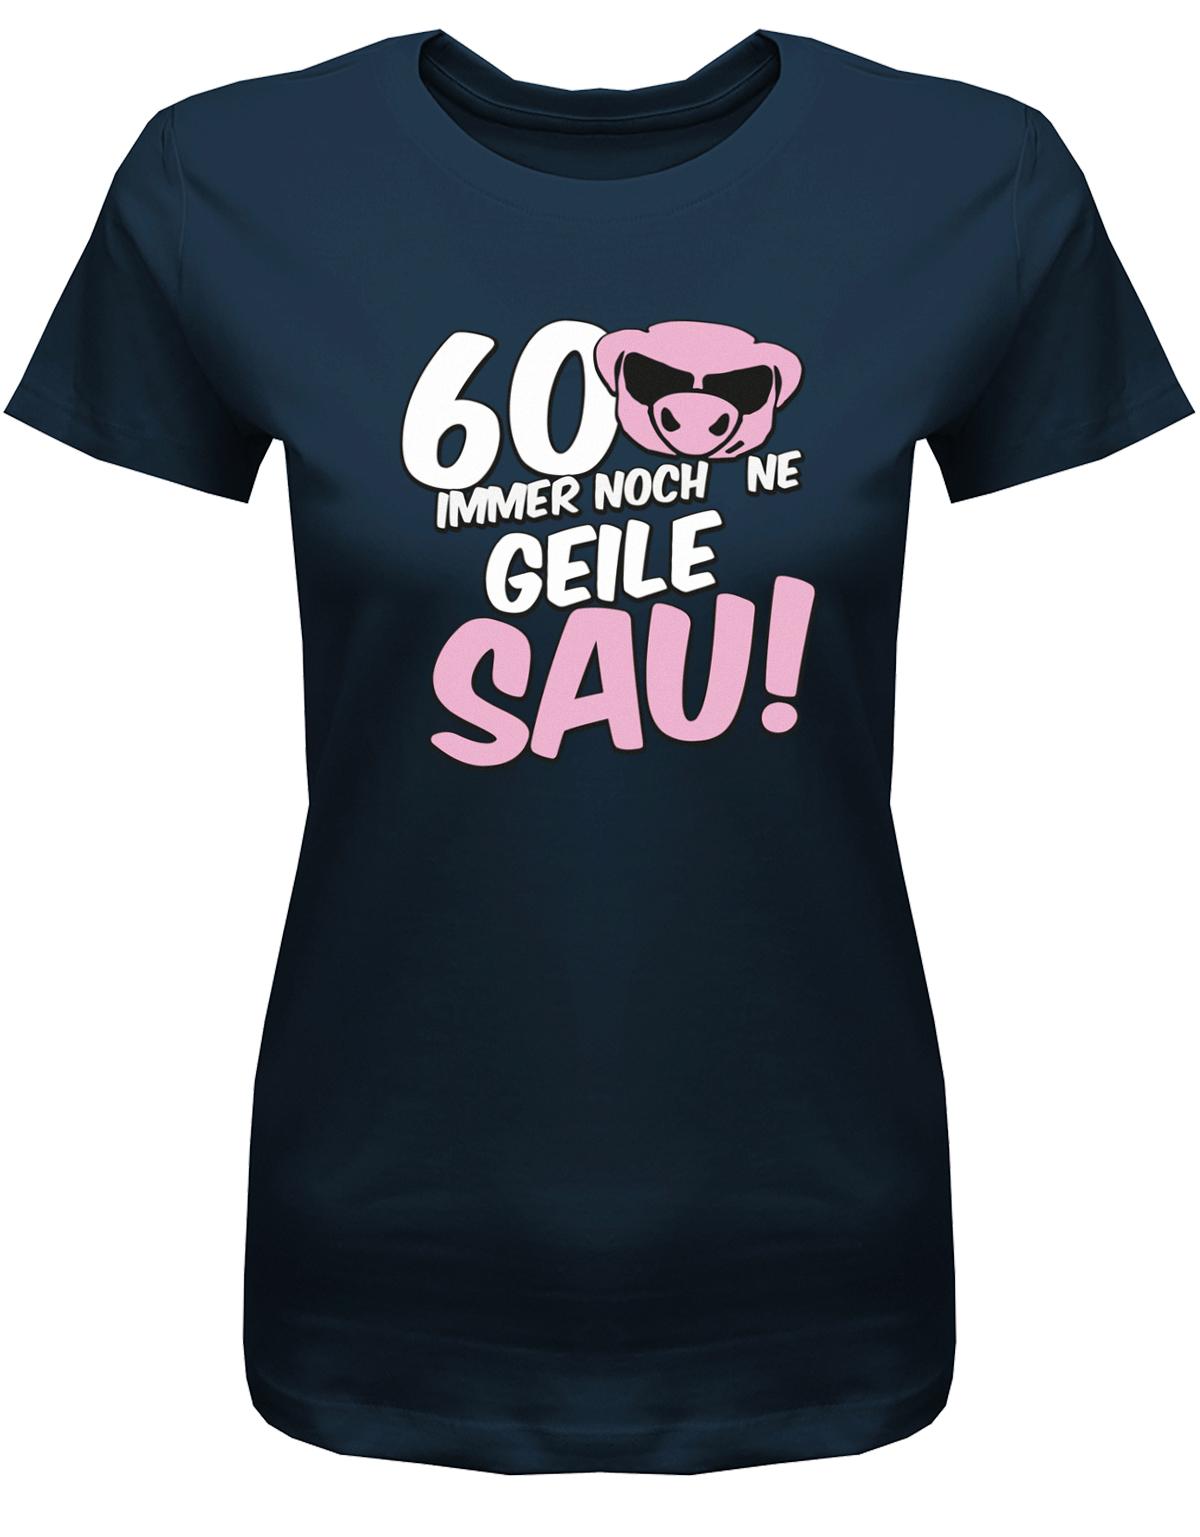 Lustiges T-Shirt zum 60 Geburtstag für die Frau Bedruckt mit 60 Immer noch 'ne geile Sau! Sau mit Sonnenbrille navy